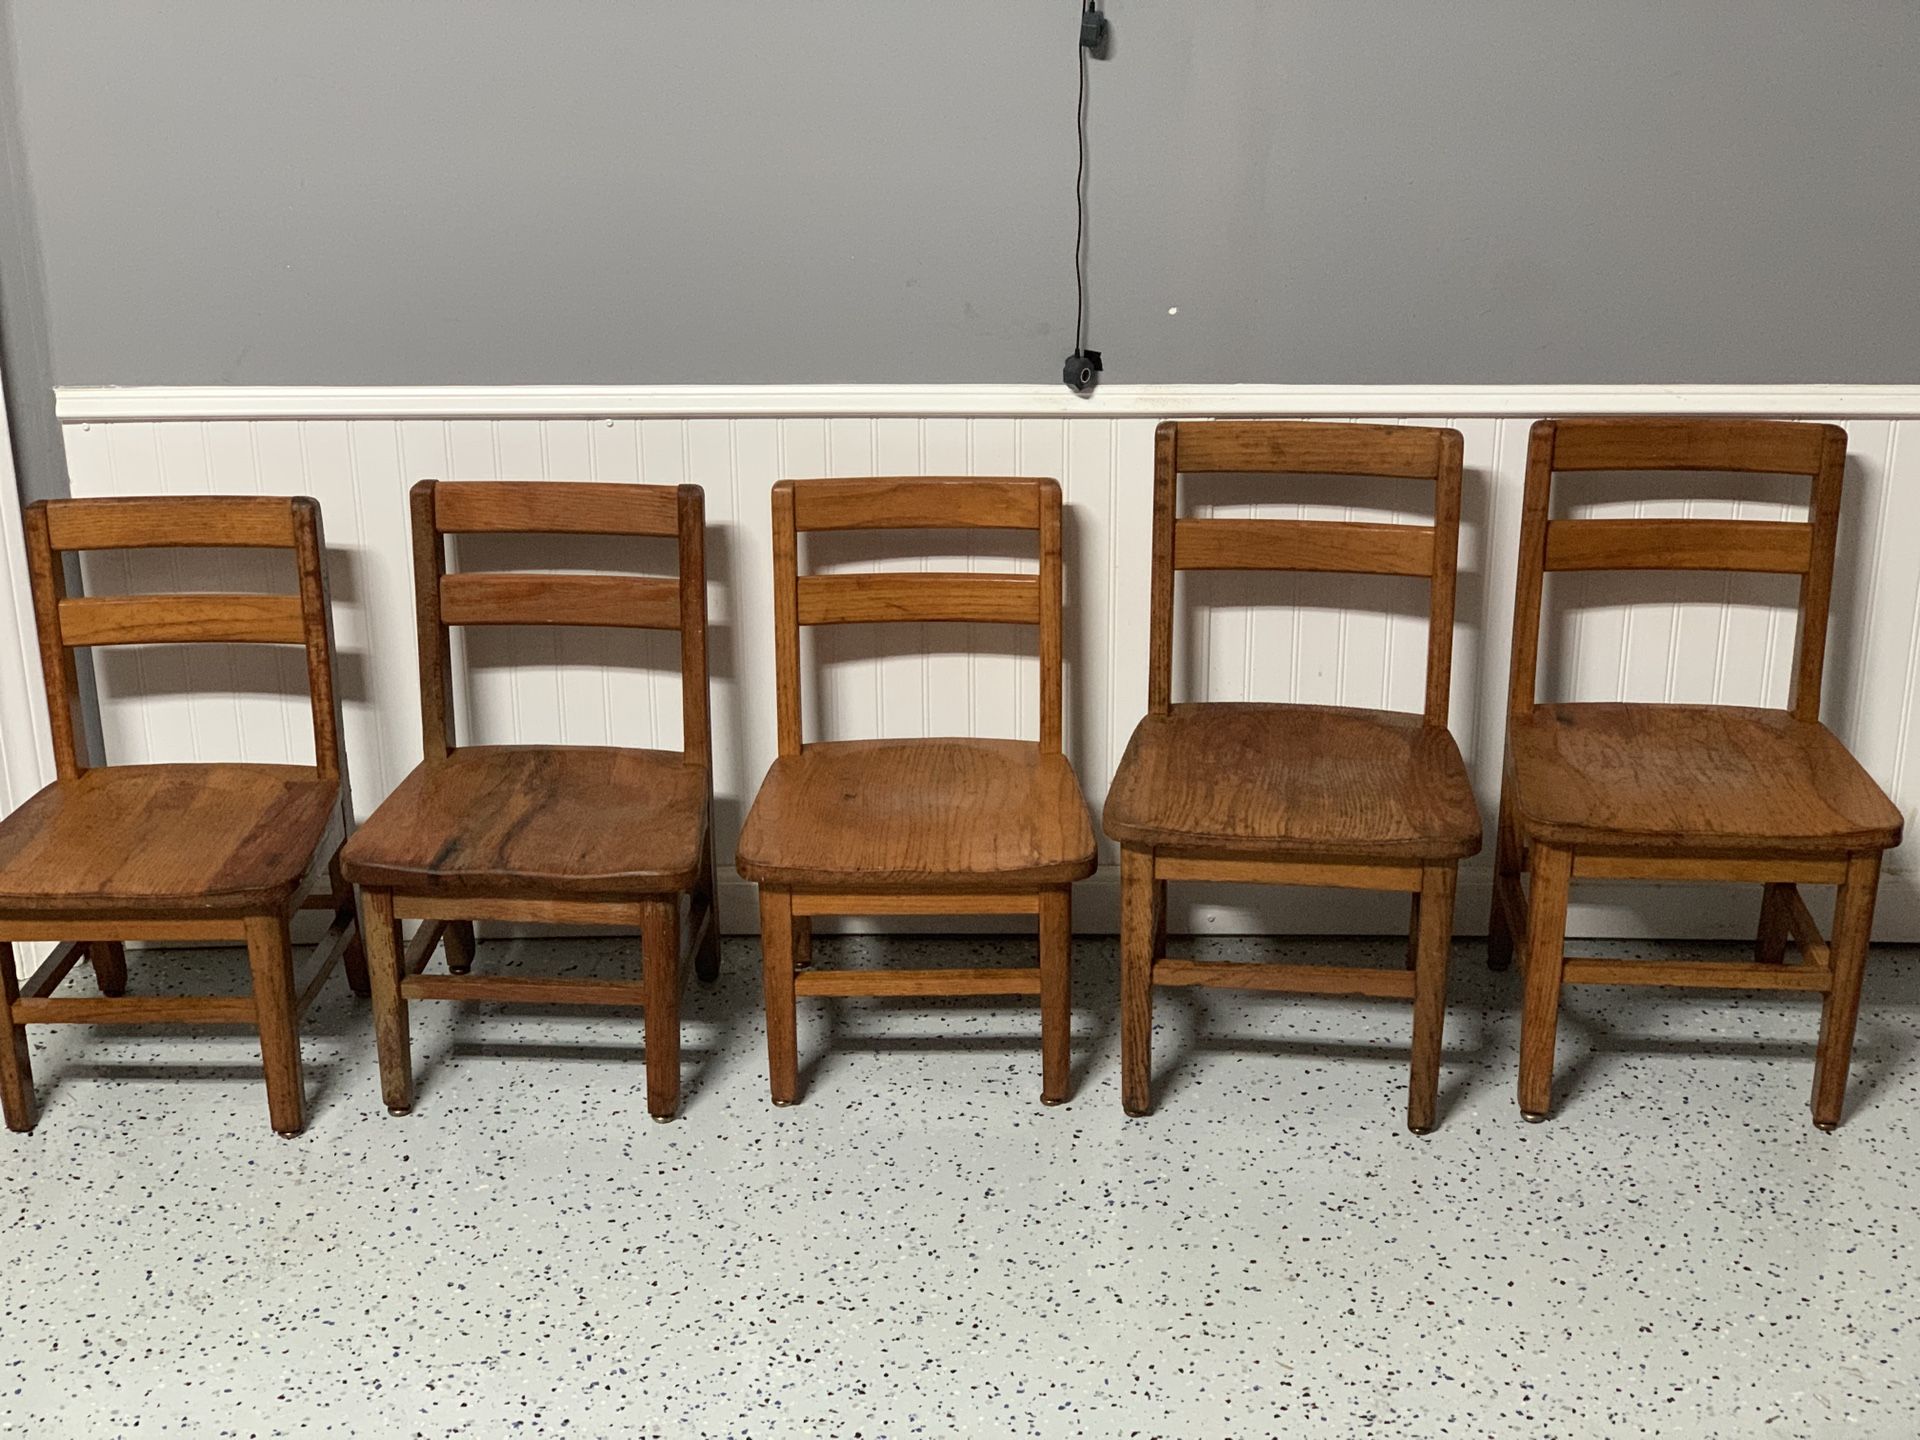 Solid oak kids chairs ($10 each)